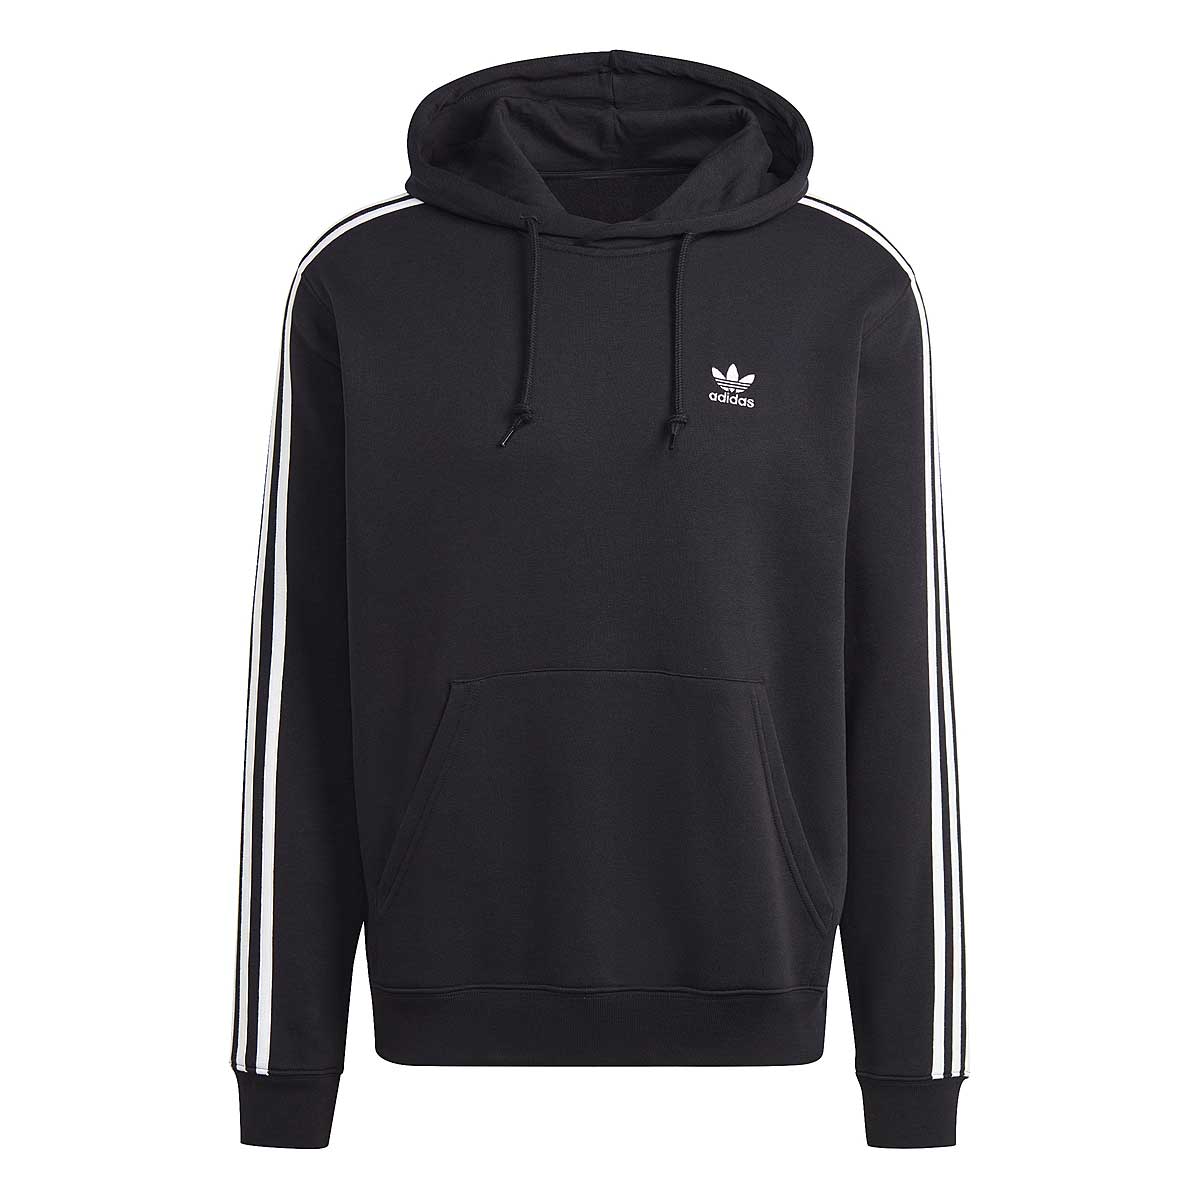 Adidas 3-stripes Hoody, Schwarz/schwarz M